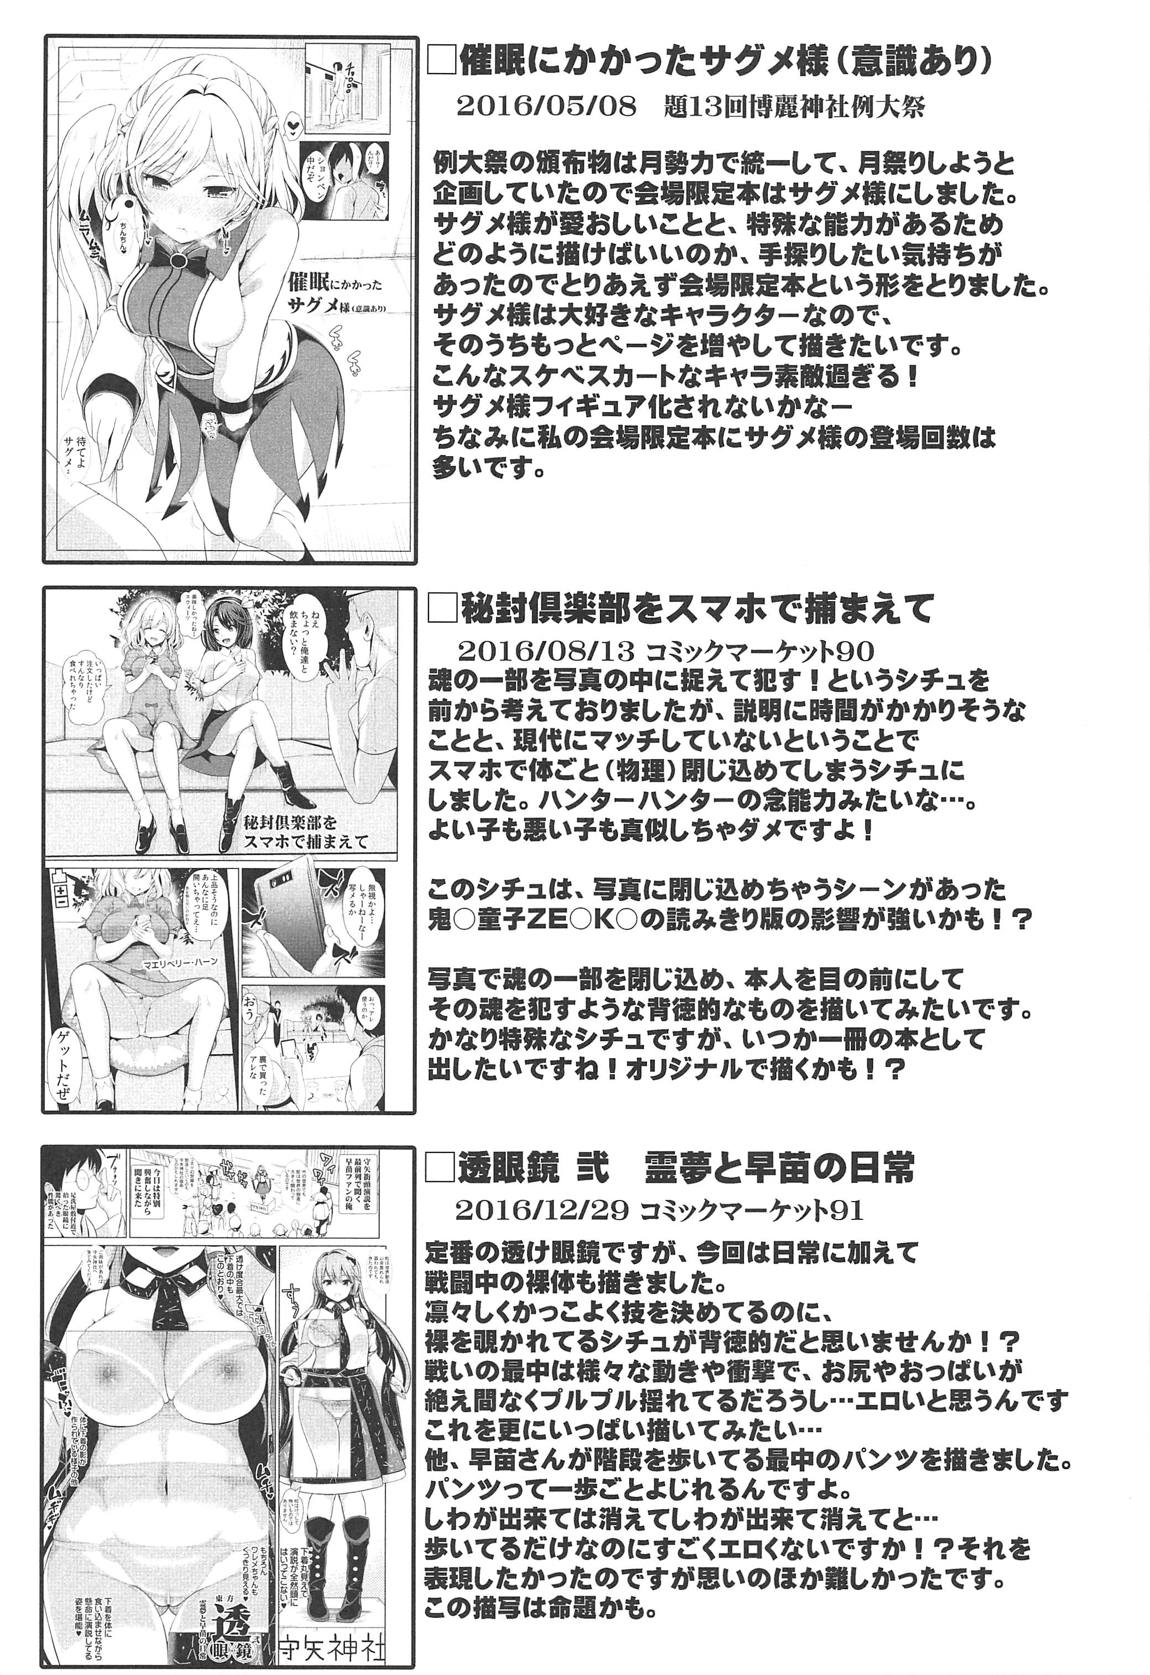 特殊シチュ総集編 東方シコるッ! 2 82ページ